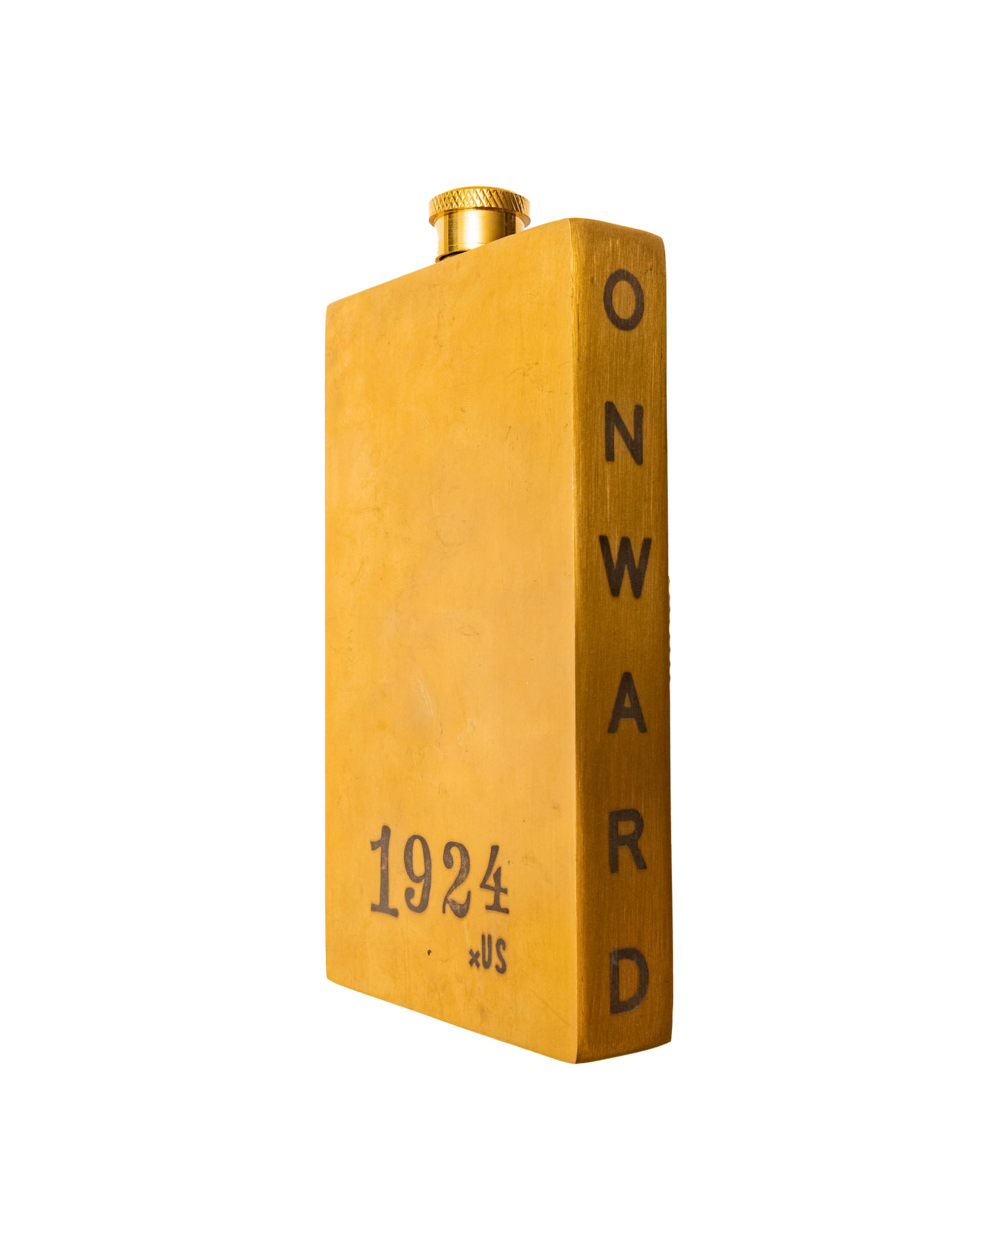 Wholesale - The 1924 Brass 4 oz Pocket Flask